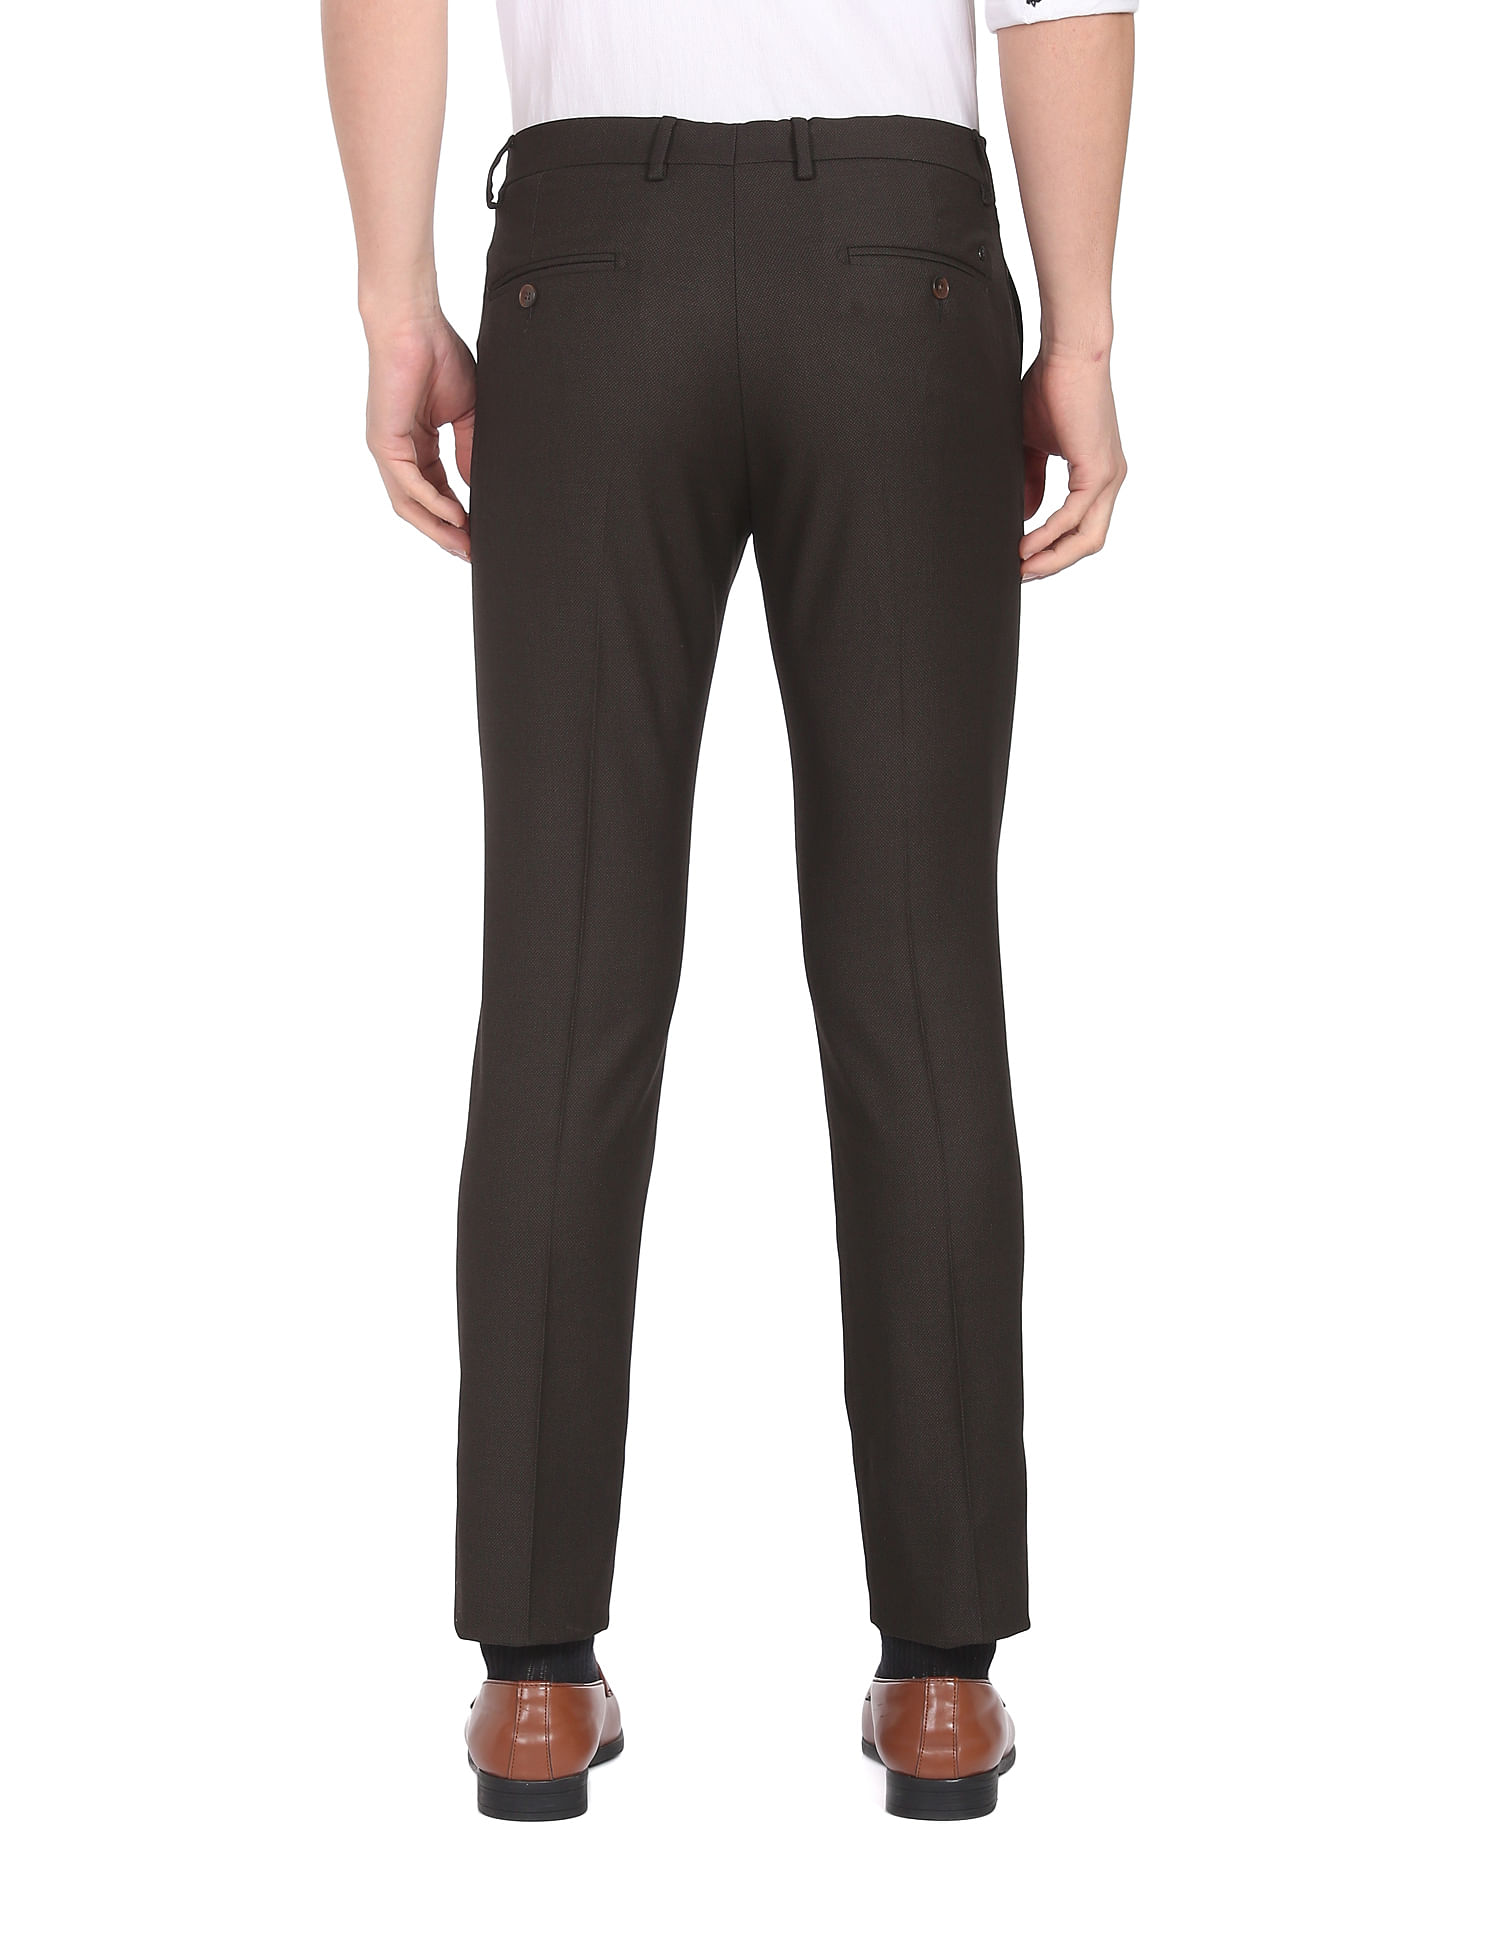 Arrow formal pants 🆕 | Formal pants, Formal pant, Clothes design